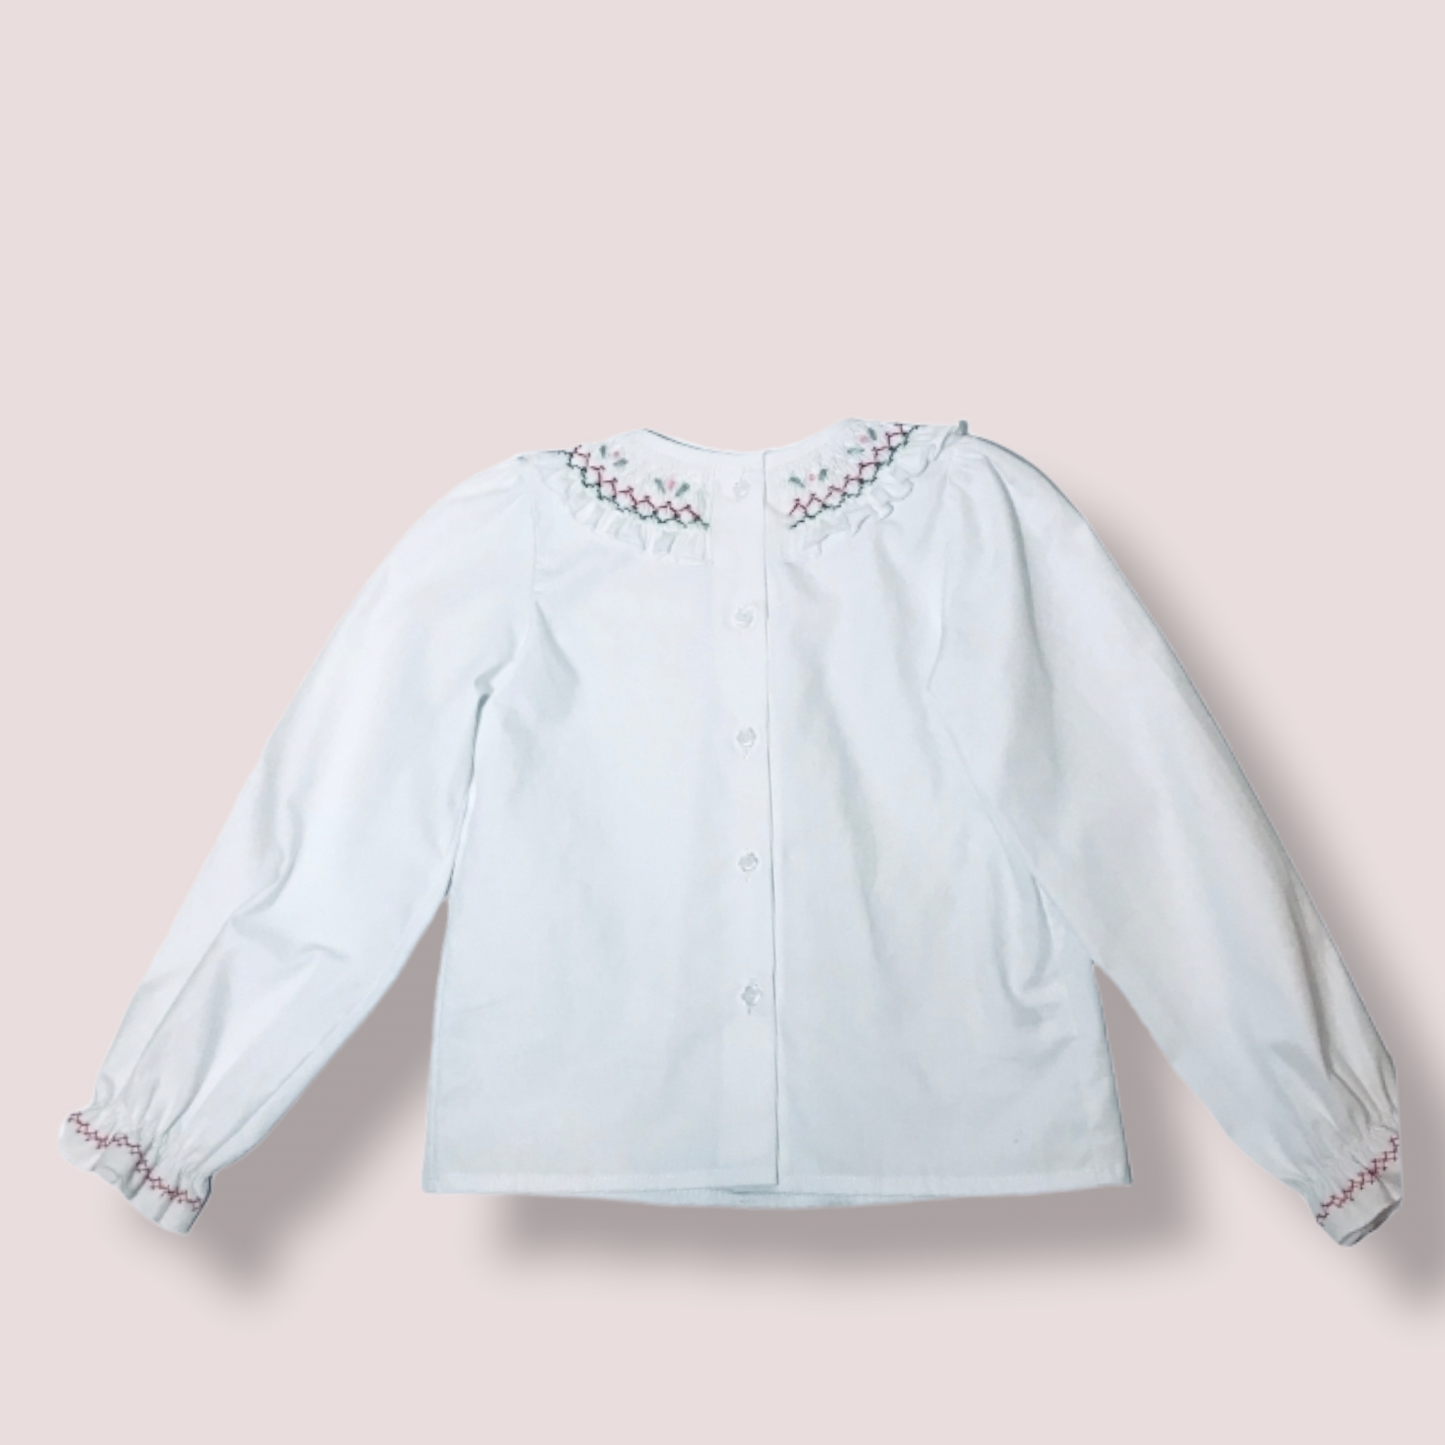 STYLE SOPHIA White Hand Smocked Long Sleeve Toddler Girl Shirt